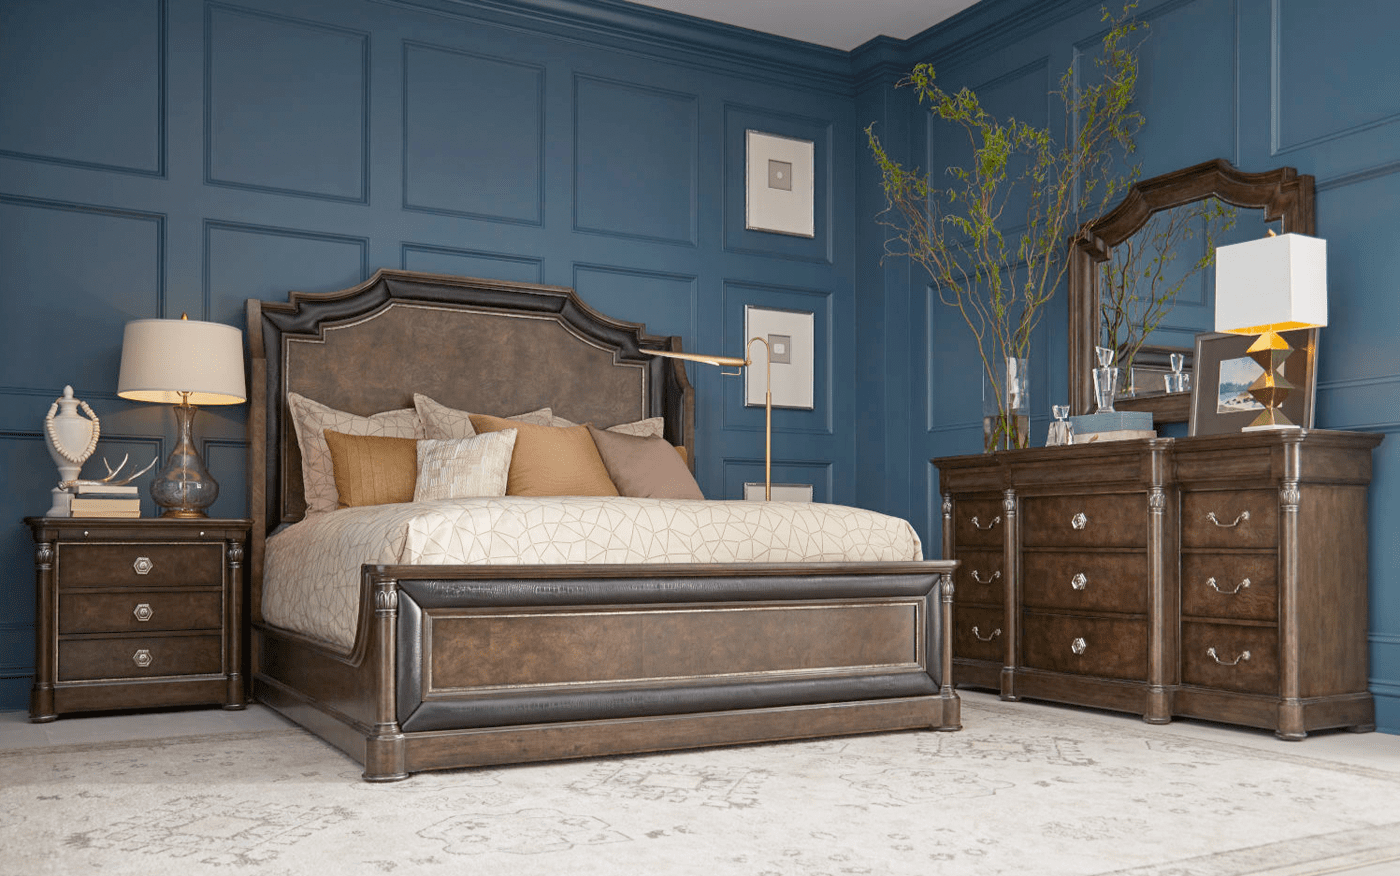 Landmark King Mansion Bed hickory & Oak Burl In Russet Finish Crock Skin Accents - $1500